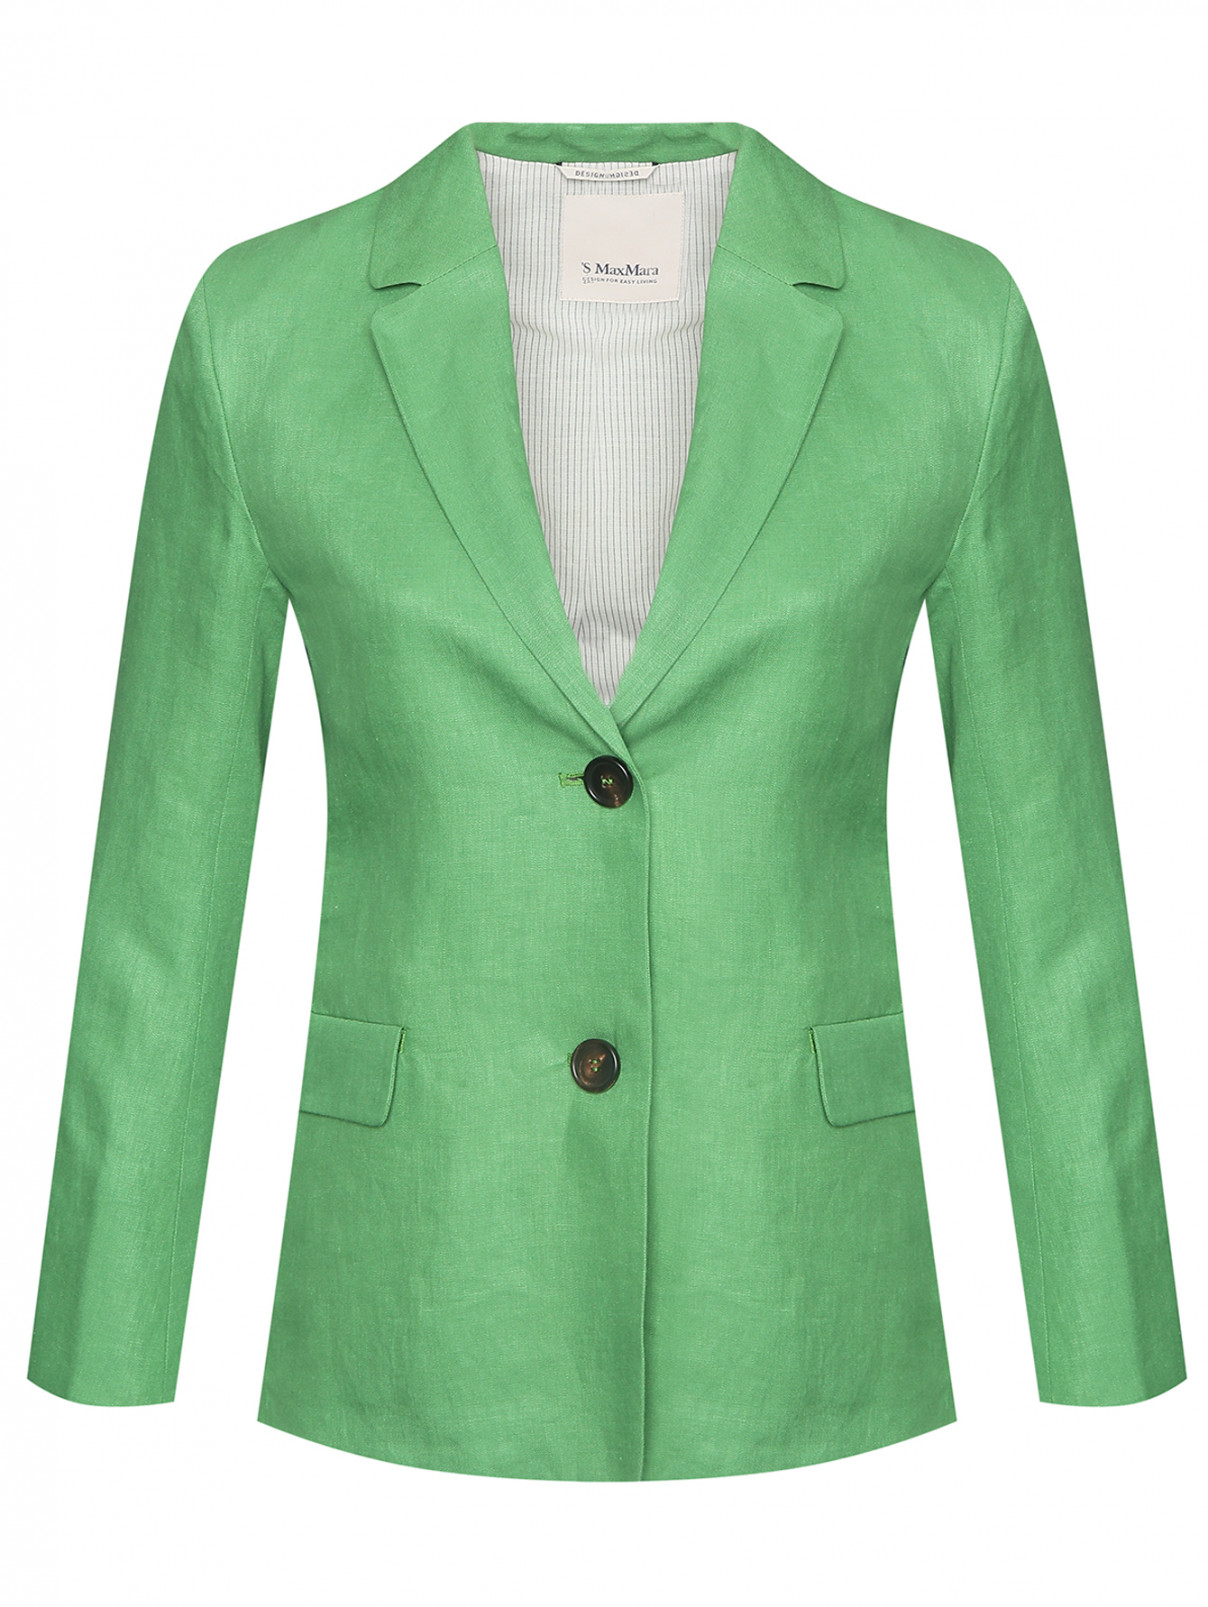 Жакет из льна с карманами Max Mara  –  Общий вид  – Цвет:  Зеленый